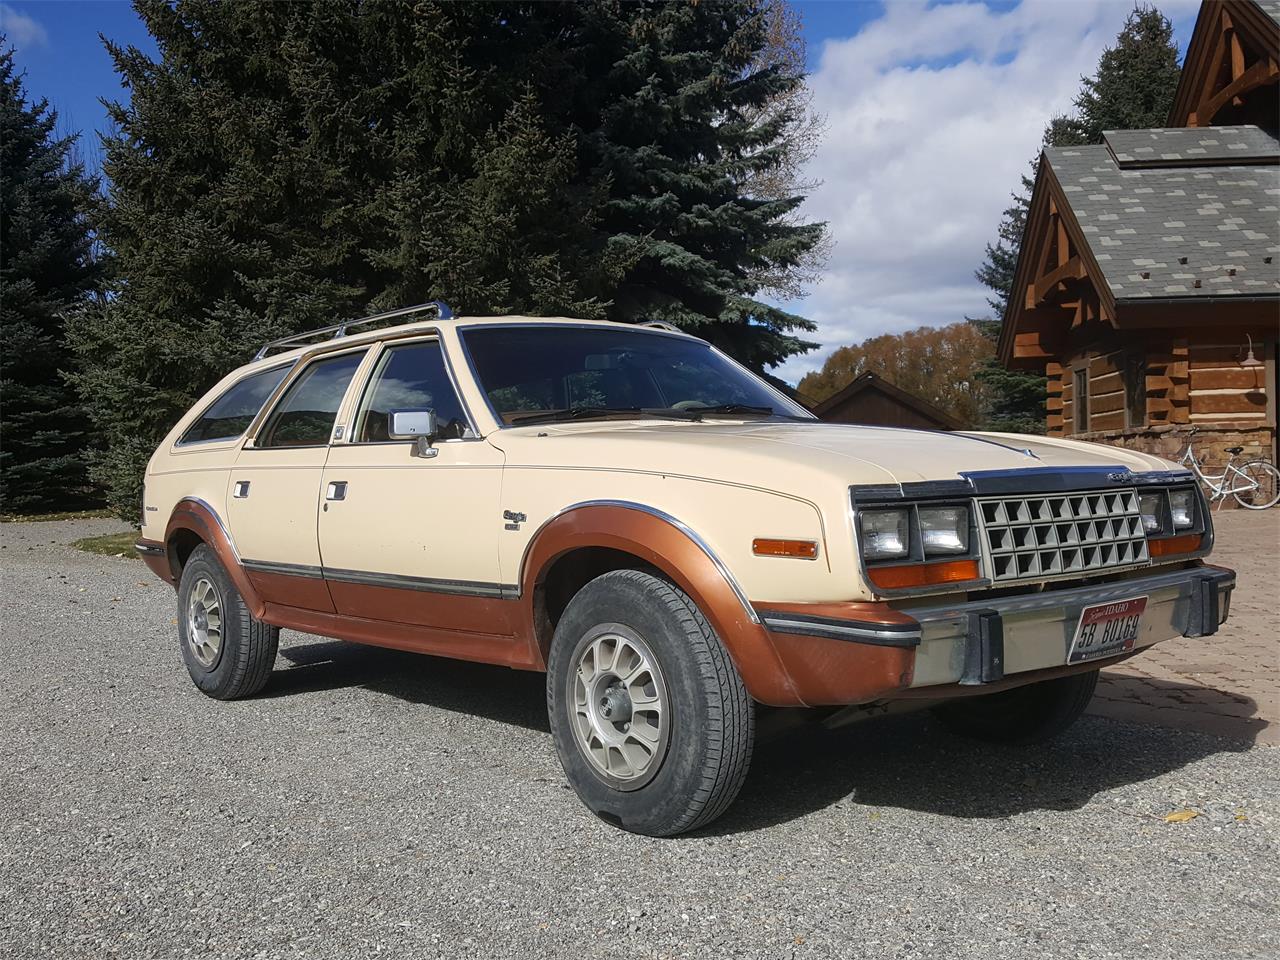 1982 AMC Eagle for Sale | ClassicCars.com | CC-1158276